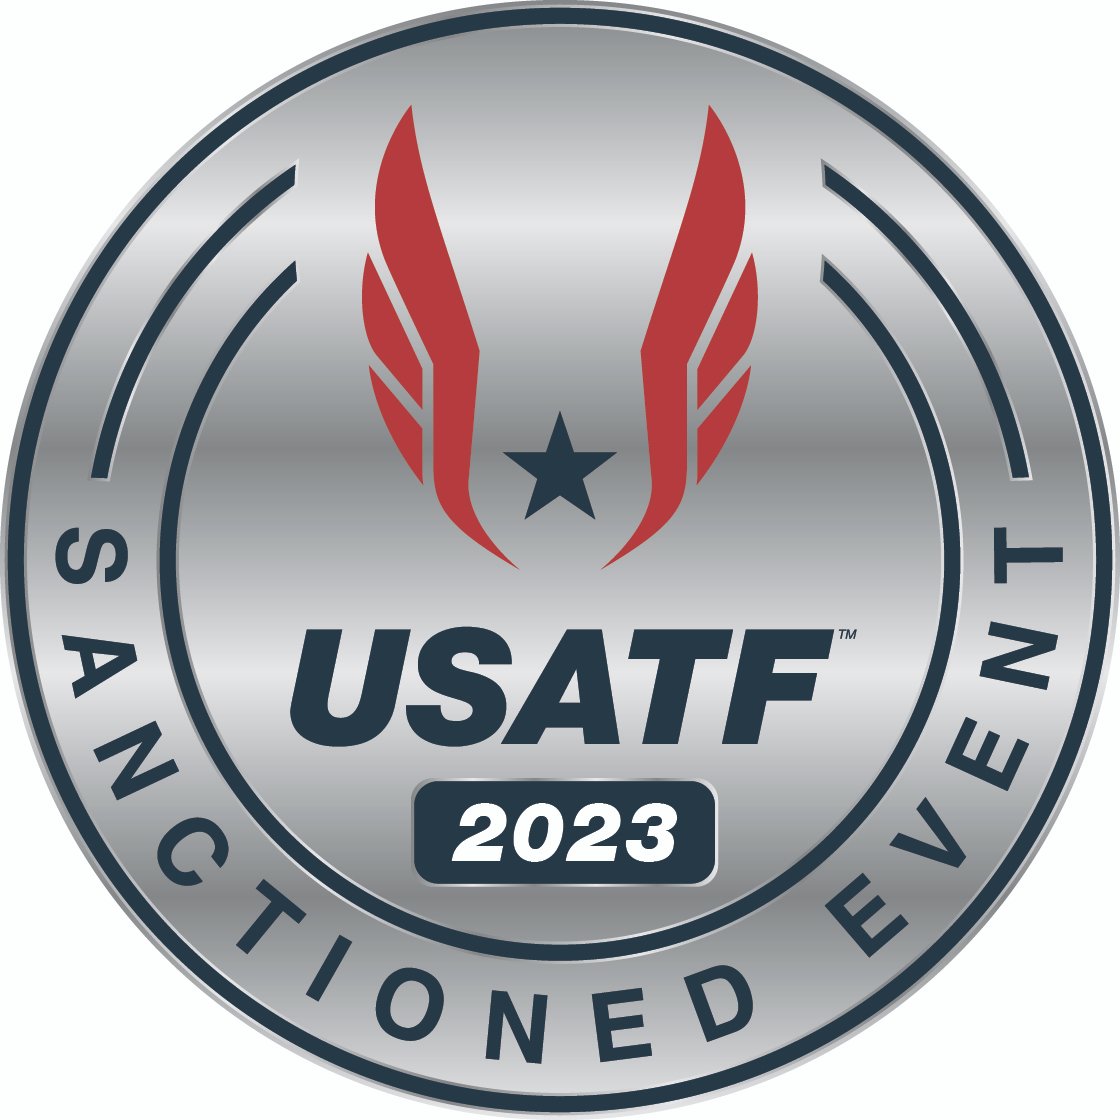 USATF 2023